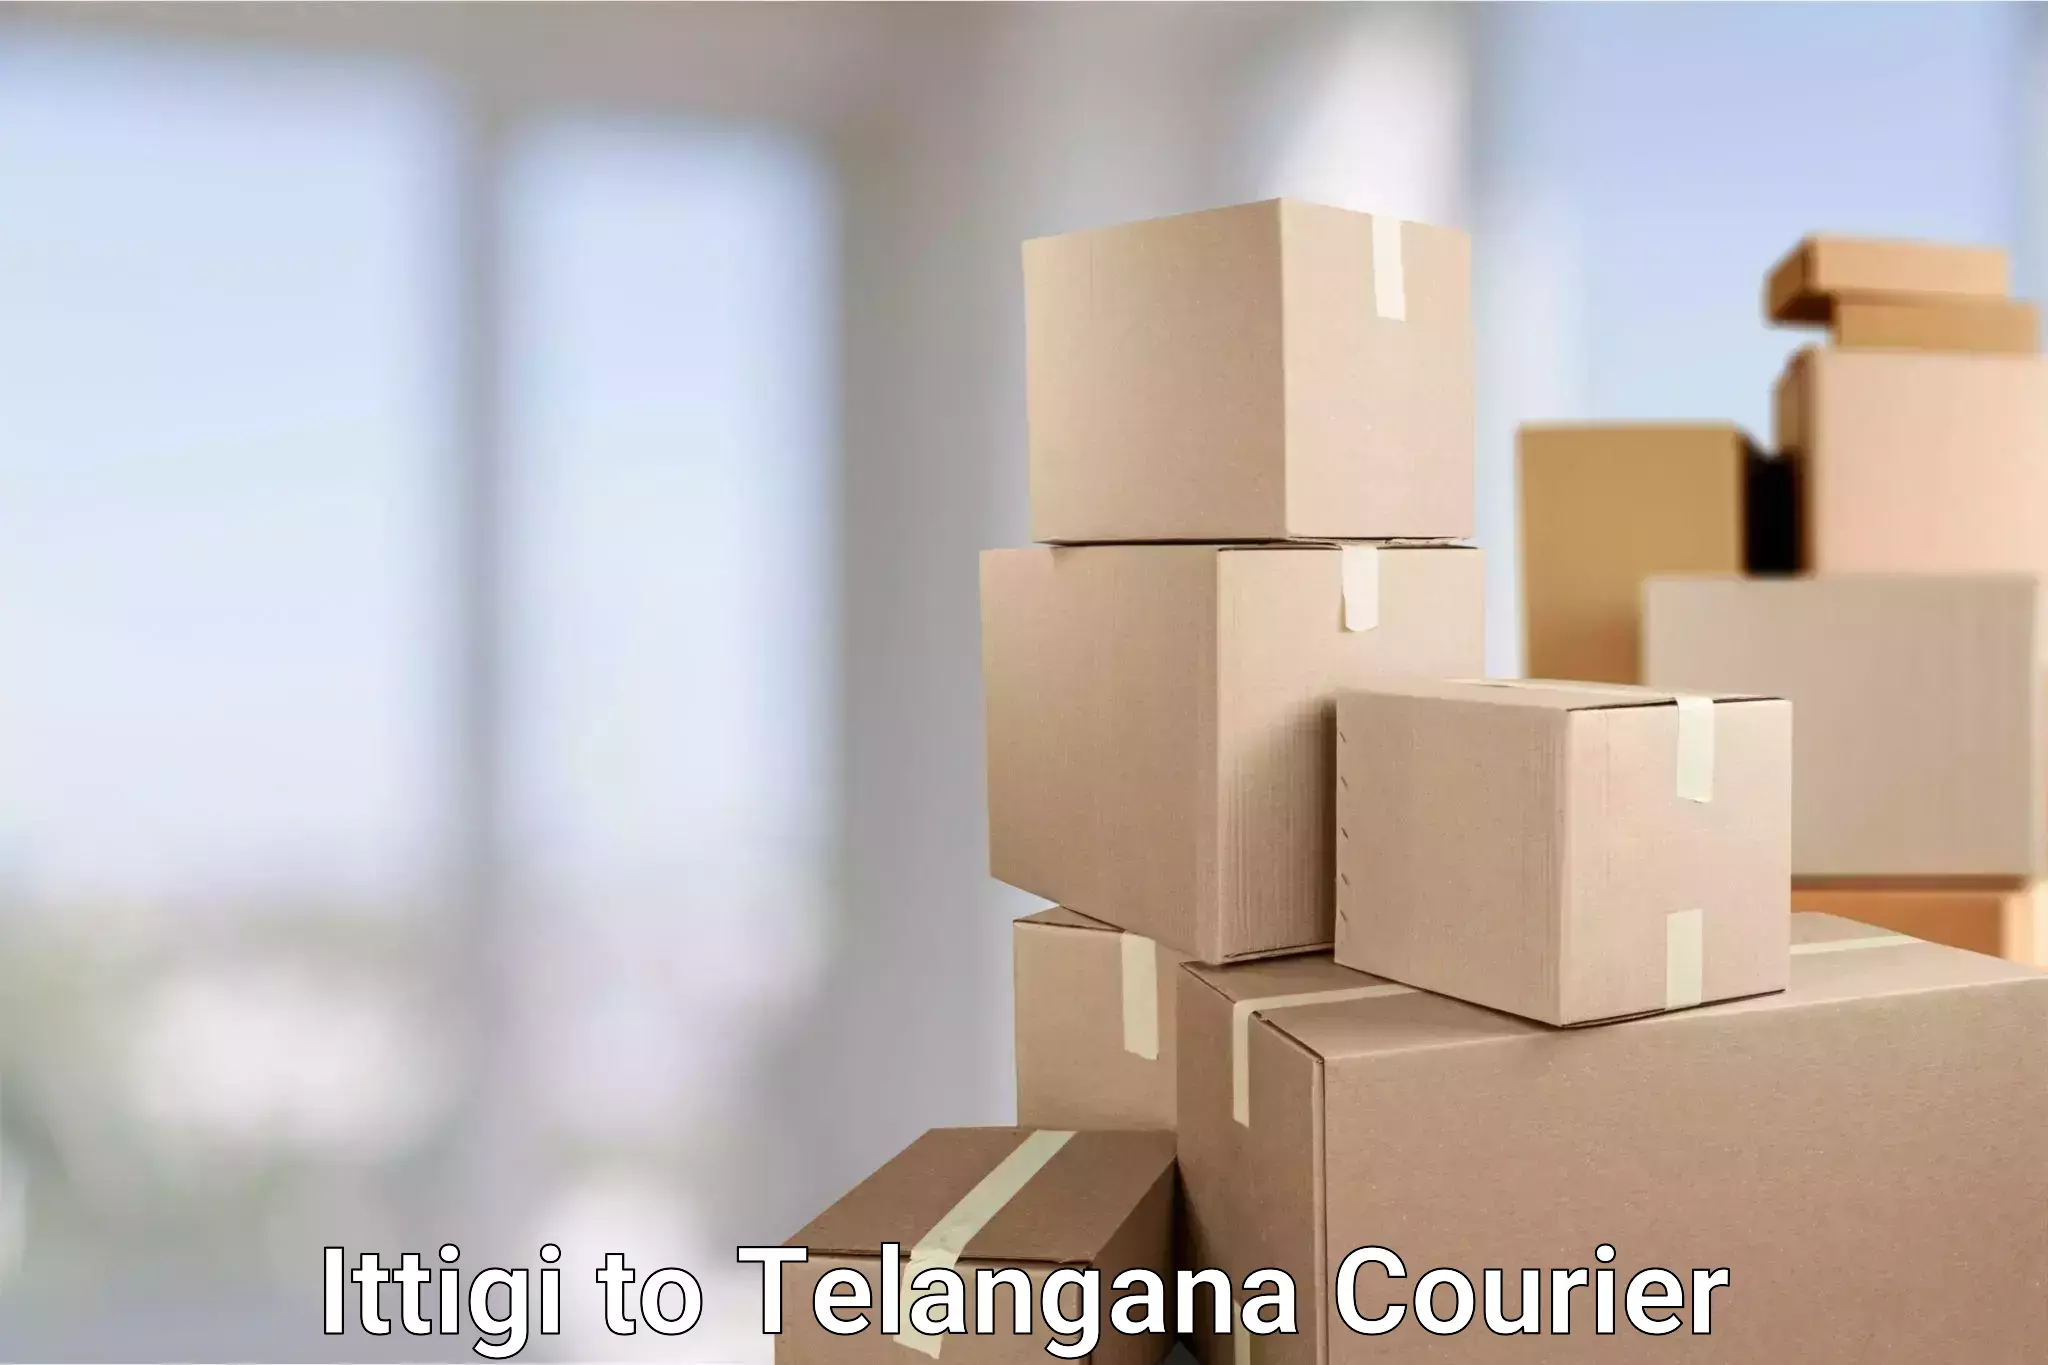 Flexible delivery schedules Ittigi to Kamalapur